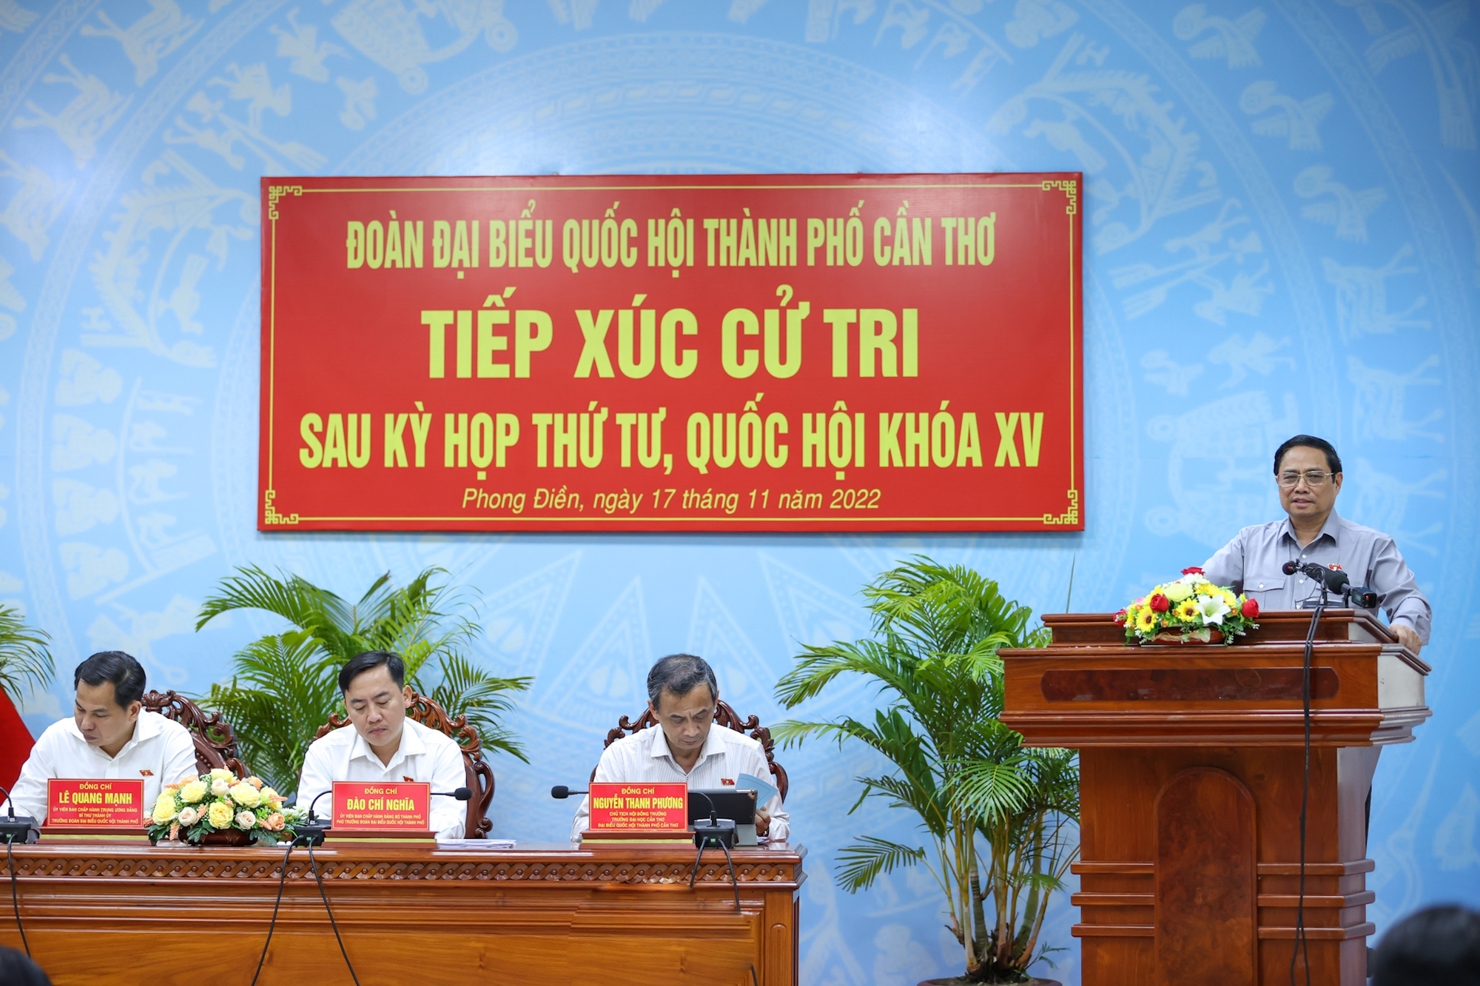  Thủ tướng Chính phủ Phạm Minh Chính có cuộc tiếp xúc cử tri TP. Cần Thơ sau Kỳ họp thứ tư, Quốc hội khóa XV